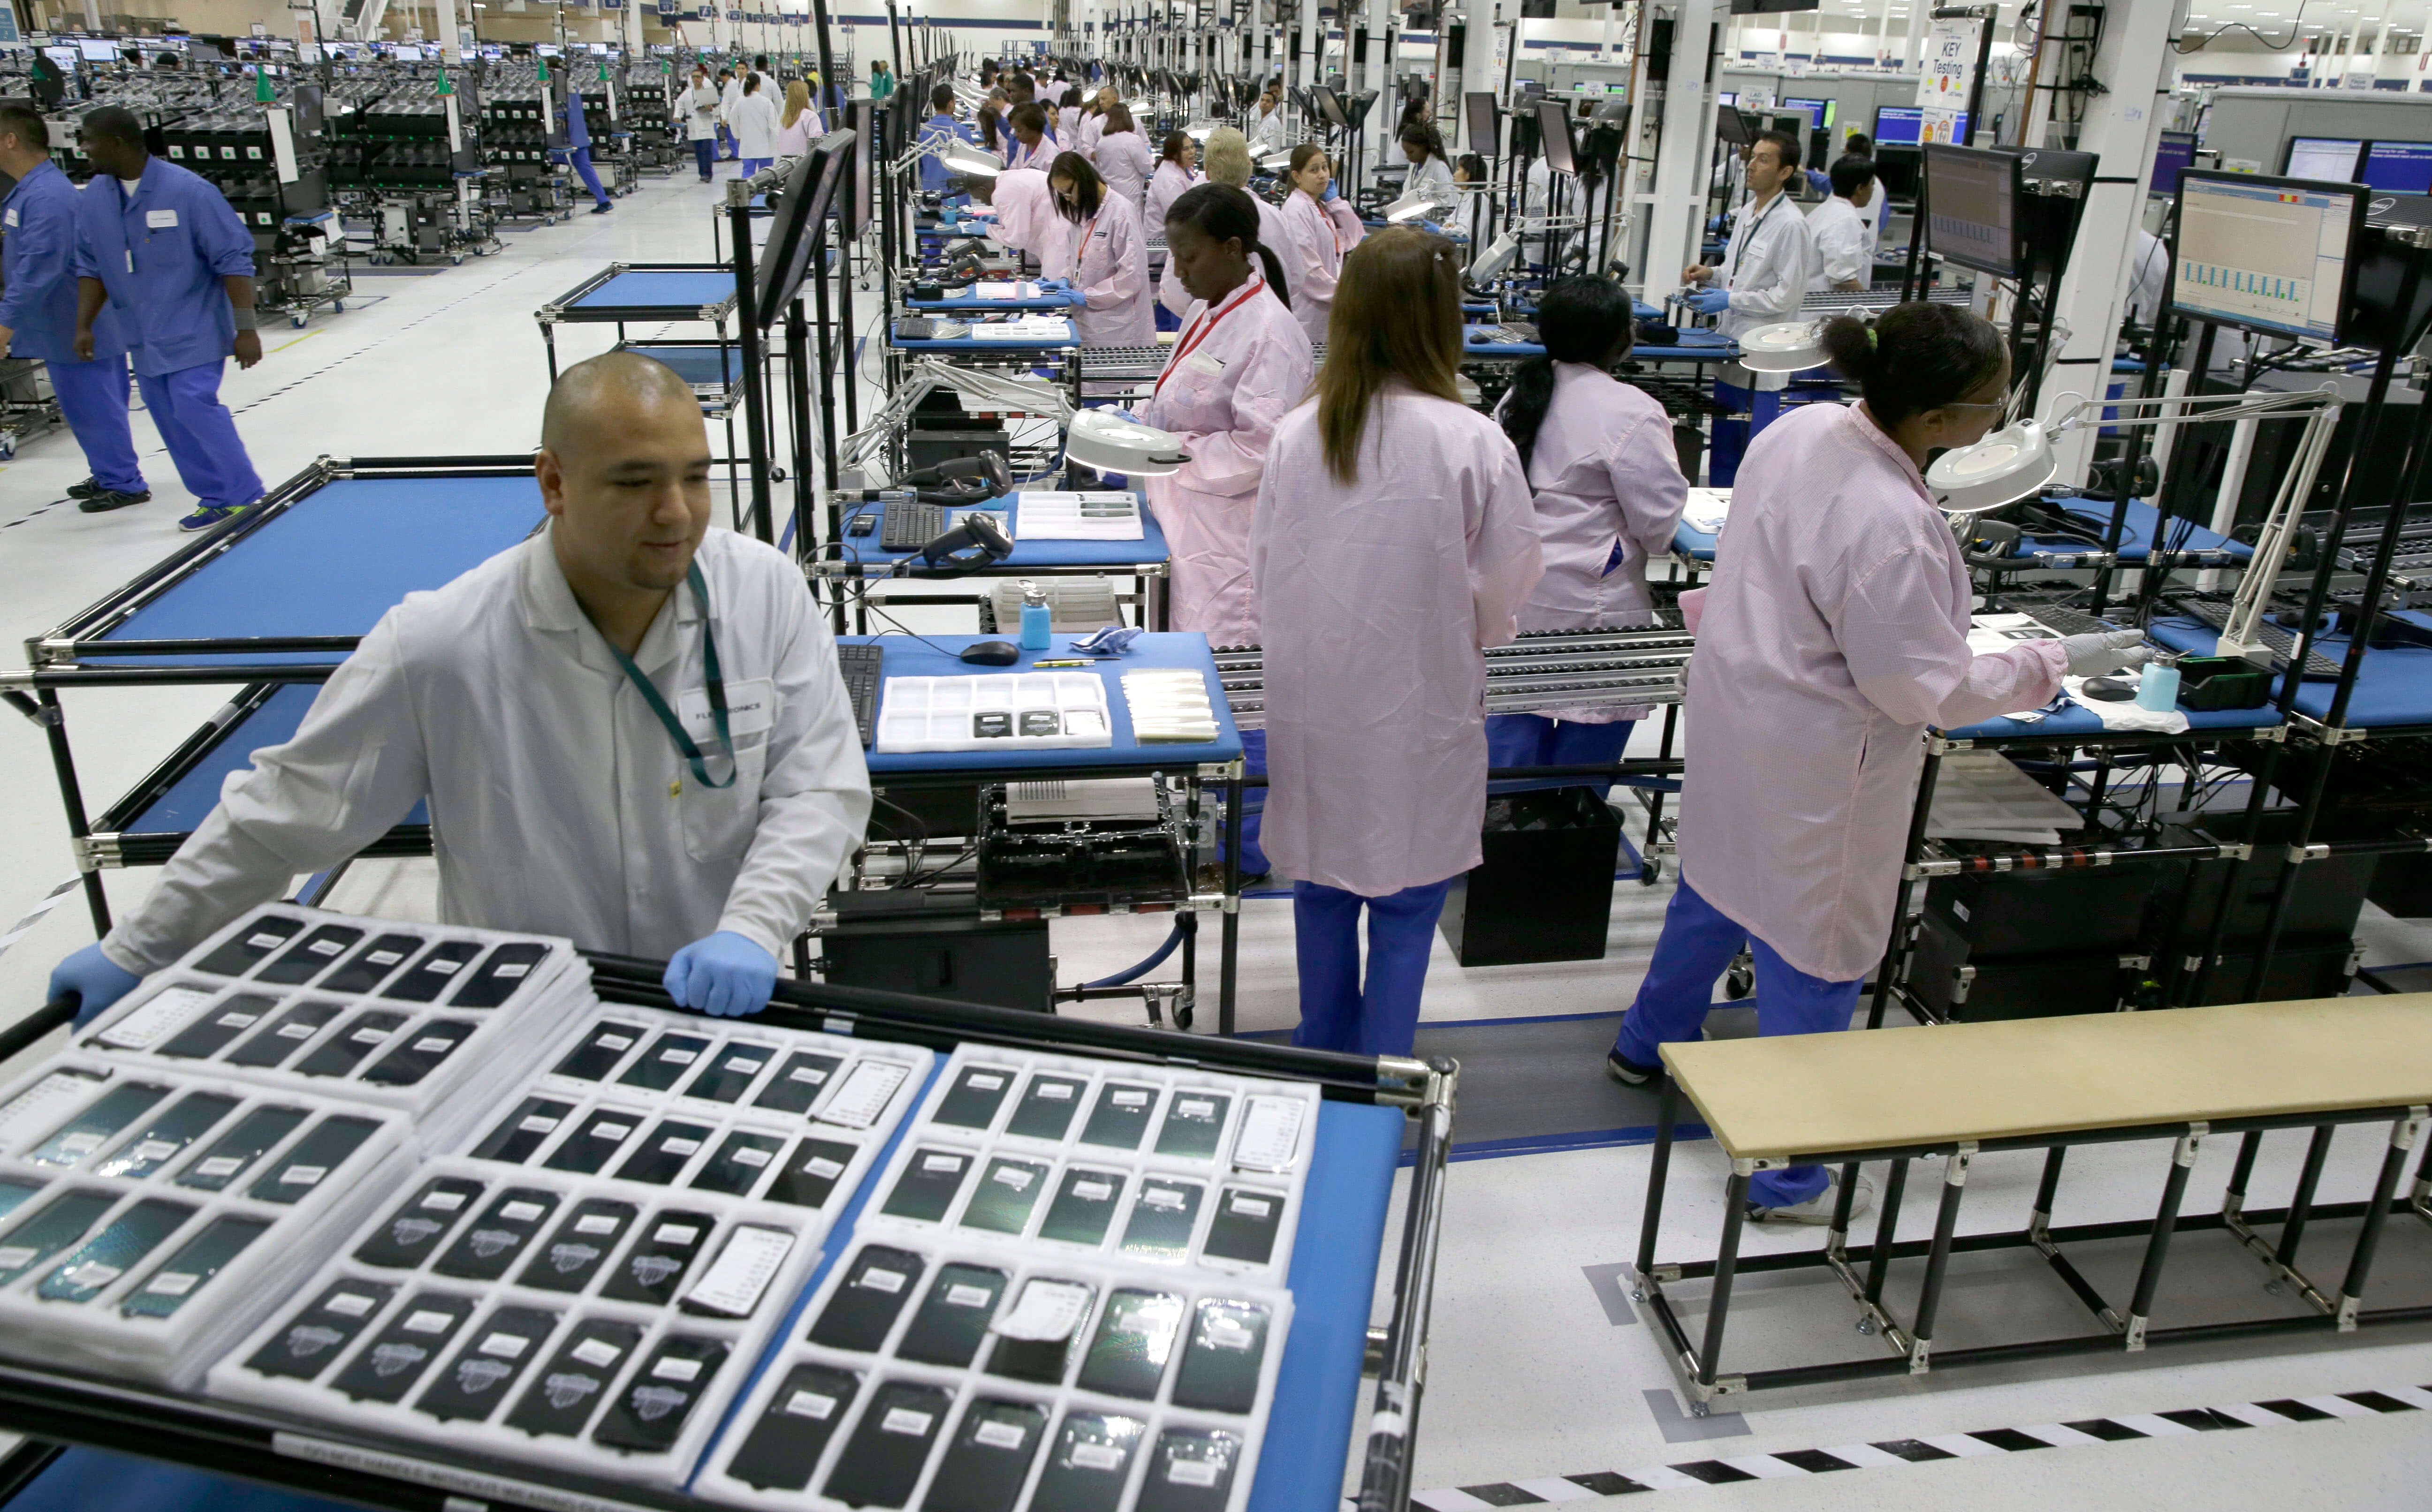 Производители телефонов в мире. Завод Эппл. Foxconn Factory. Завод Apple в Китае. Производство смартфонов.